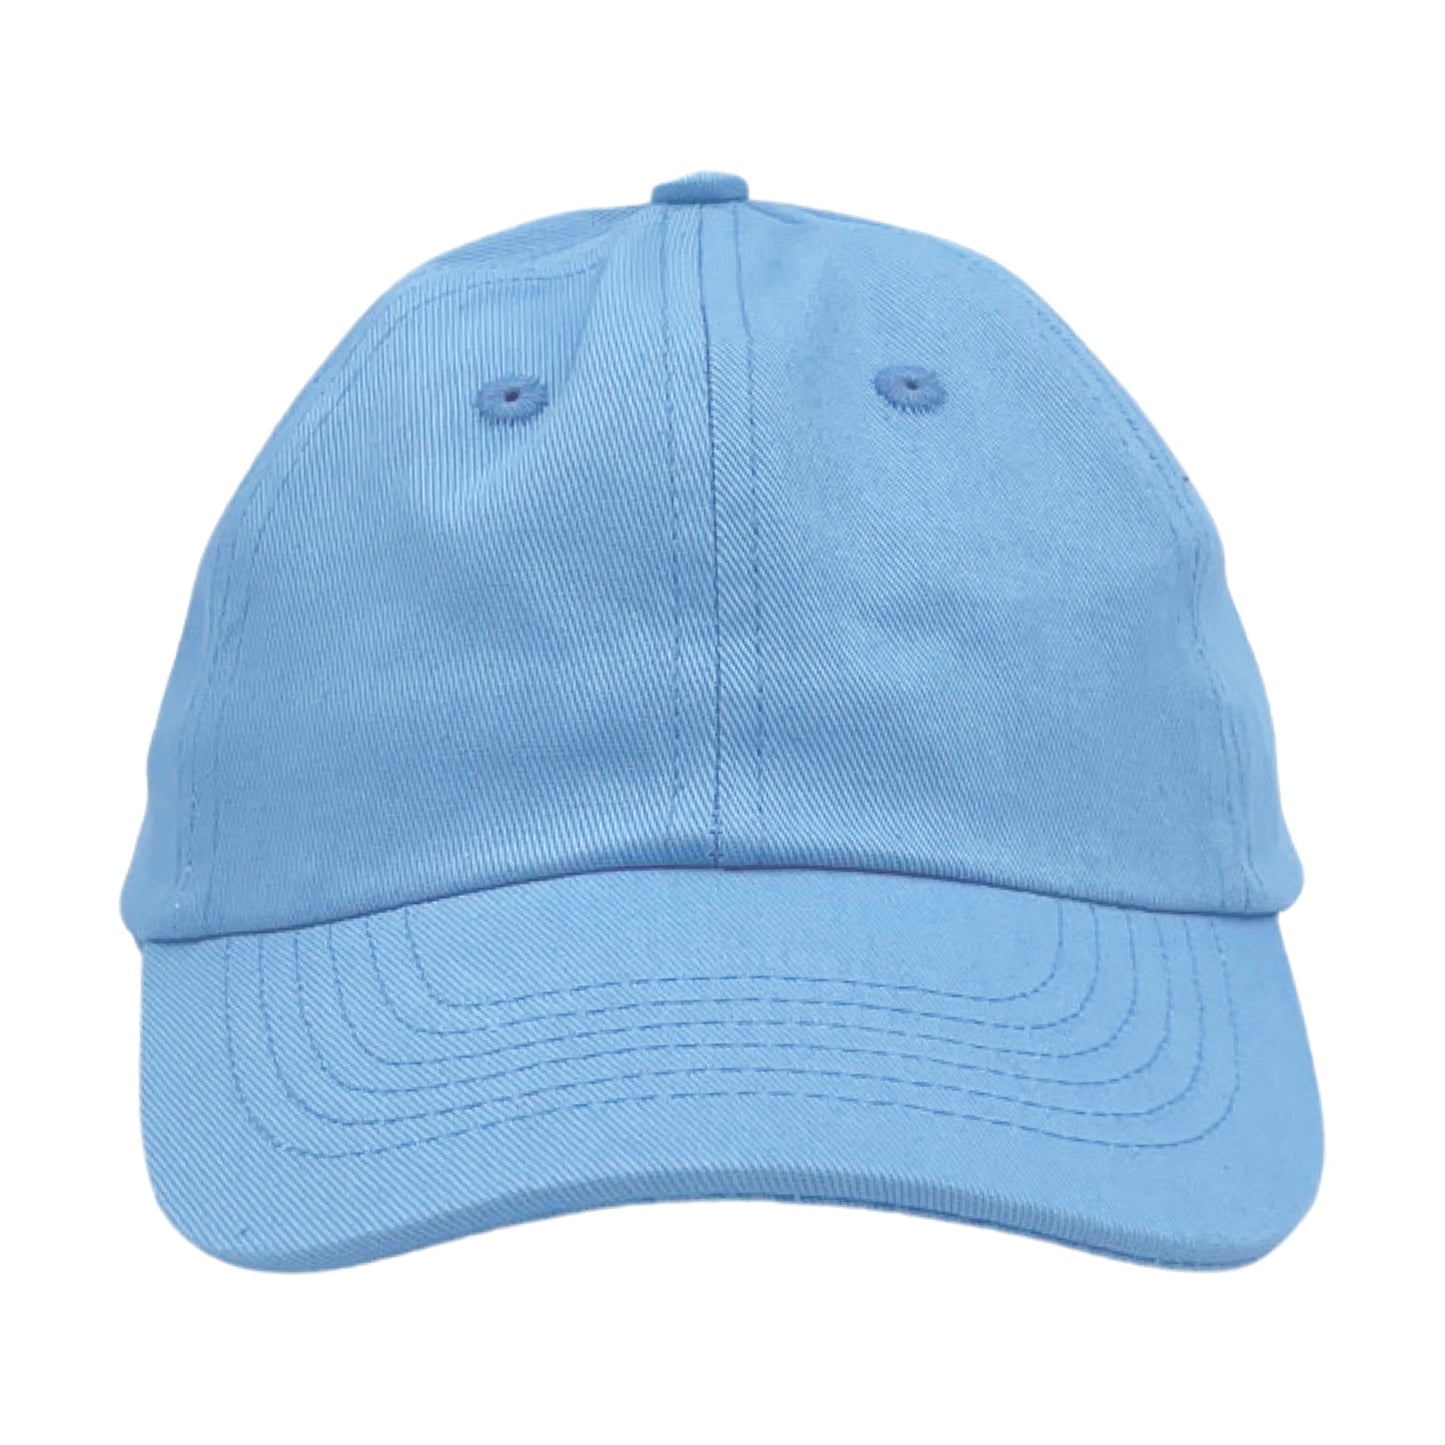 Blue Baseball Hat for Baby